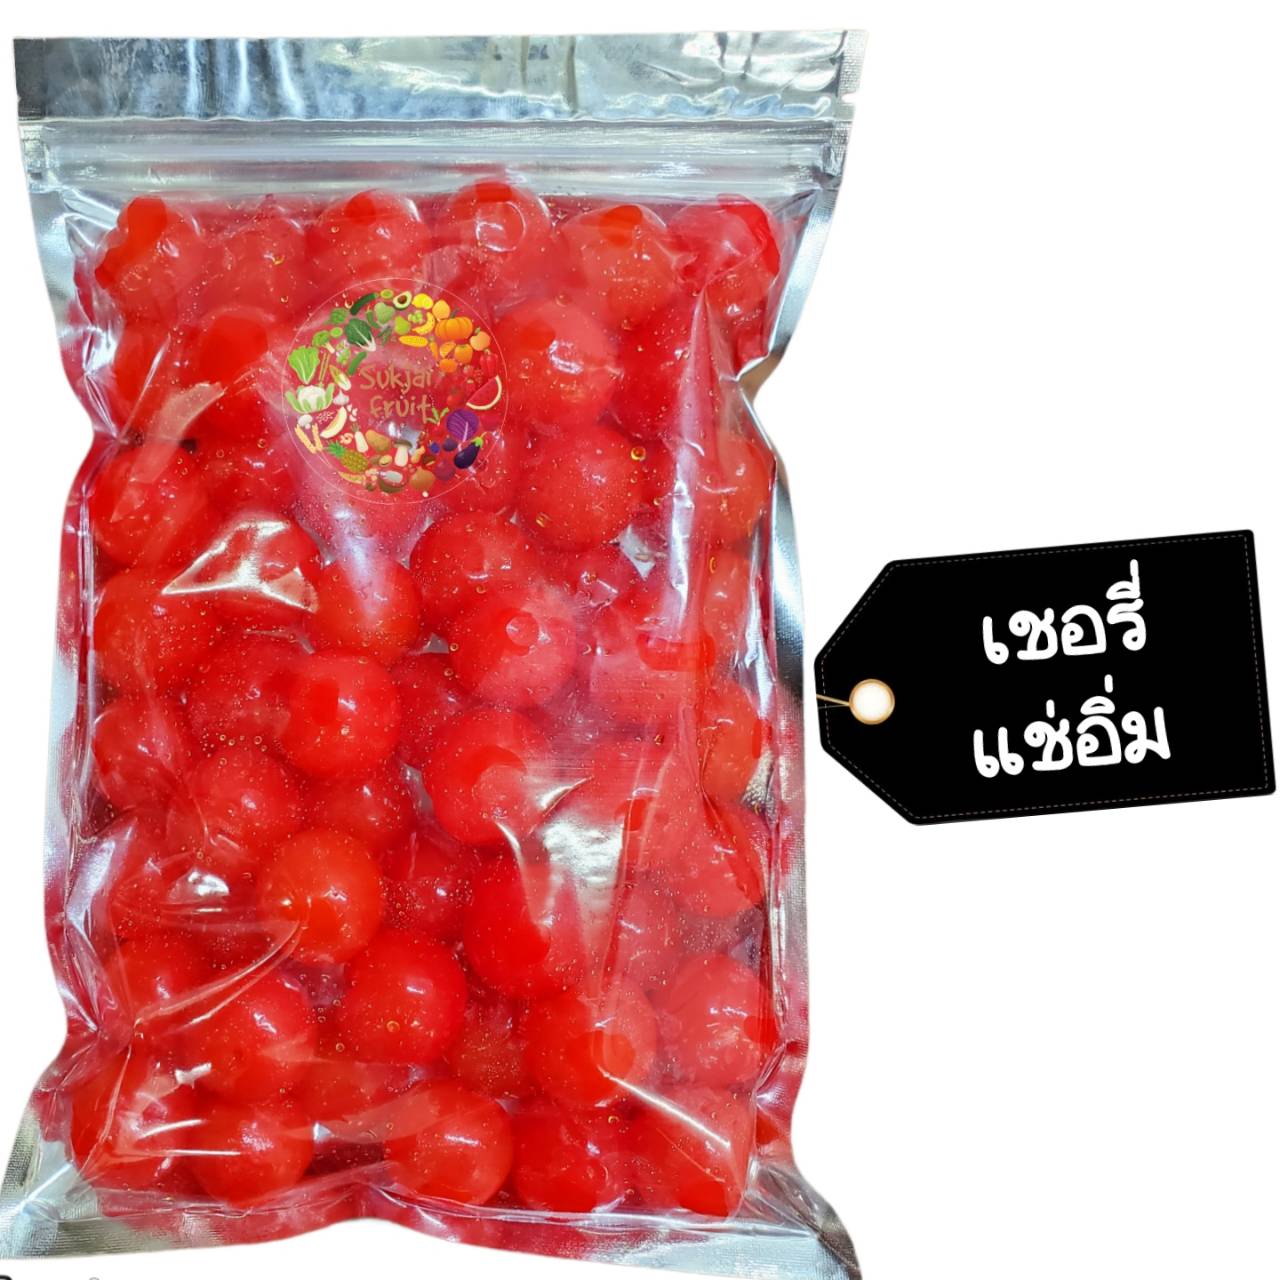 เชอรี่ แดง แช่อิ่ม 500 กรัม  - Crystallized red cherry 500 g  - Dried fruit ผลไม้ อบแห้ง ขนมไทย ขนม OTOP เชอรี่แดง ผลไม้อบแห้ง บ๊วย ผลไม้อบแห้ง